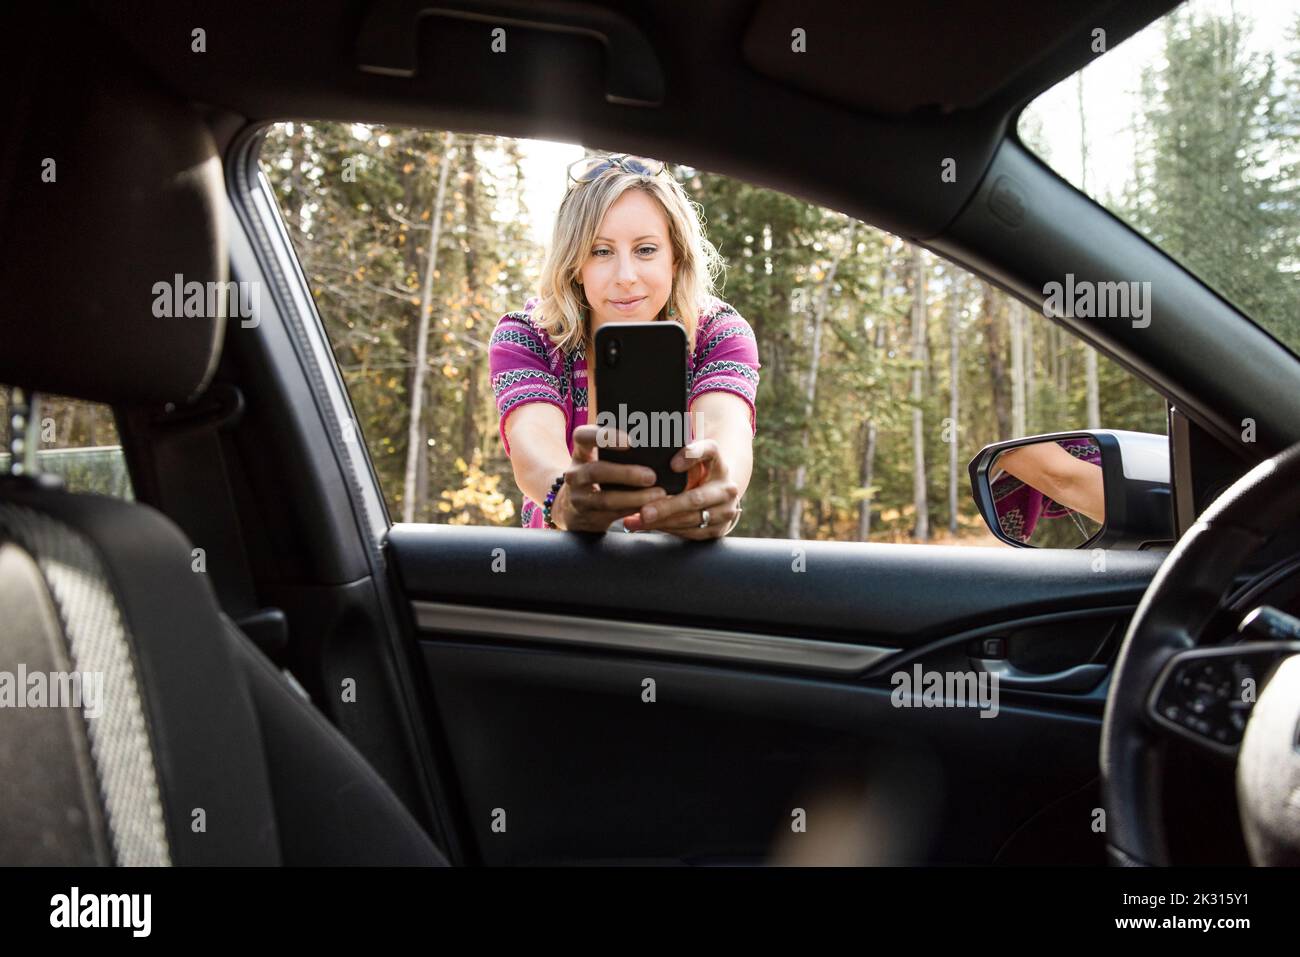 Donna che prende selfie visto dall'interno dell'auto Foto Stock